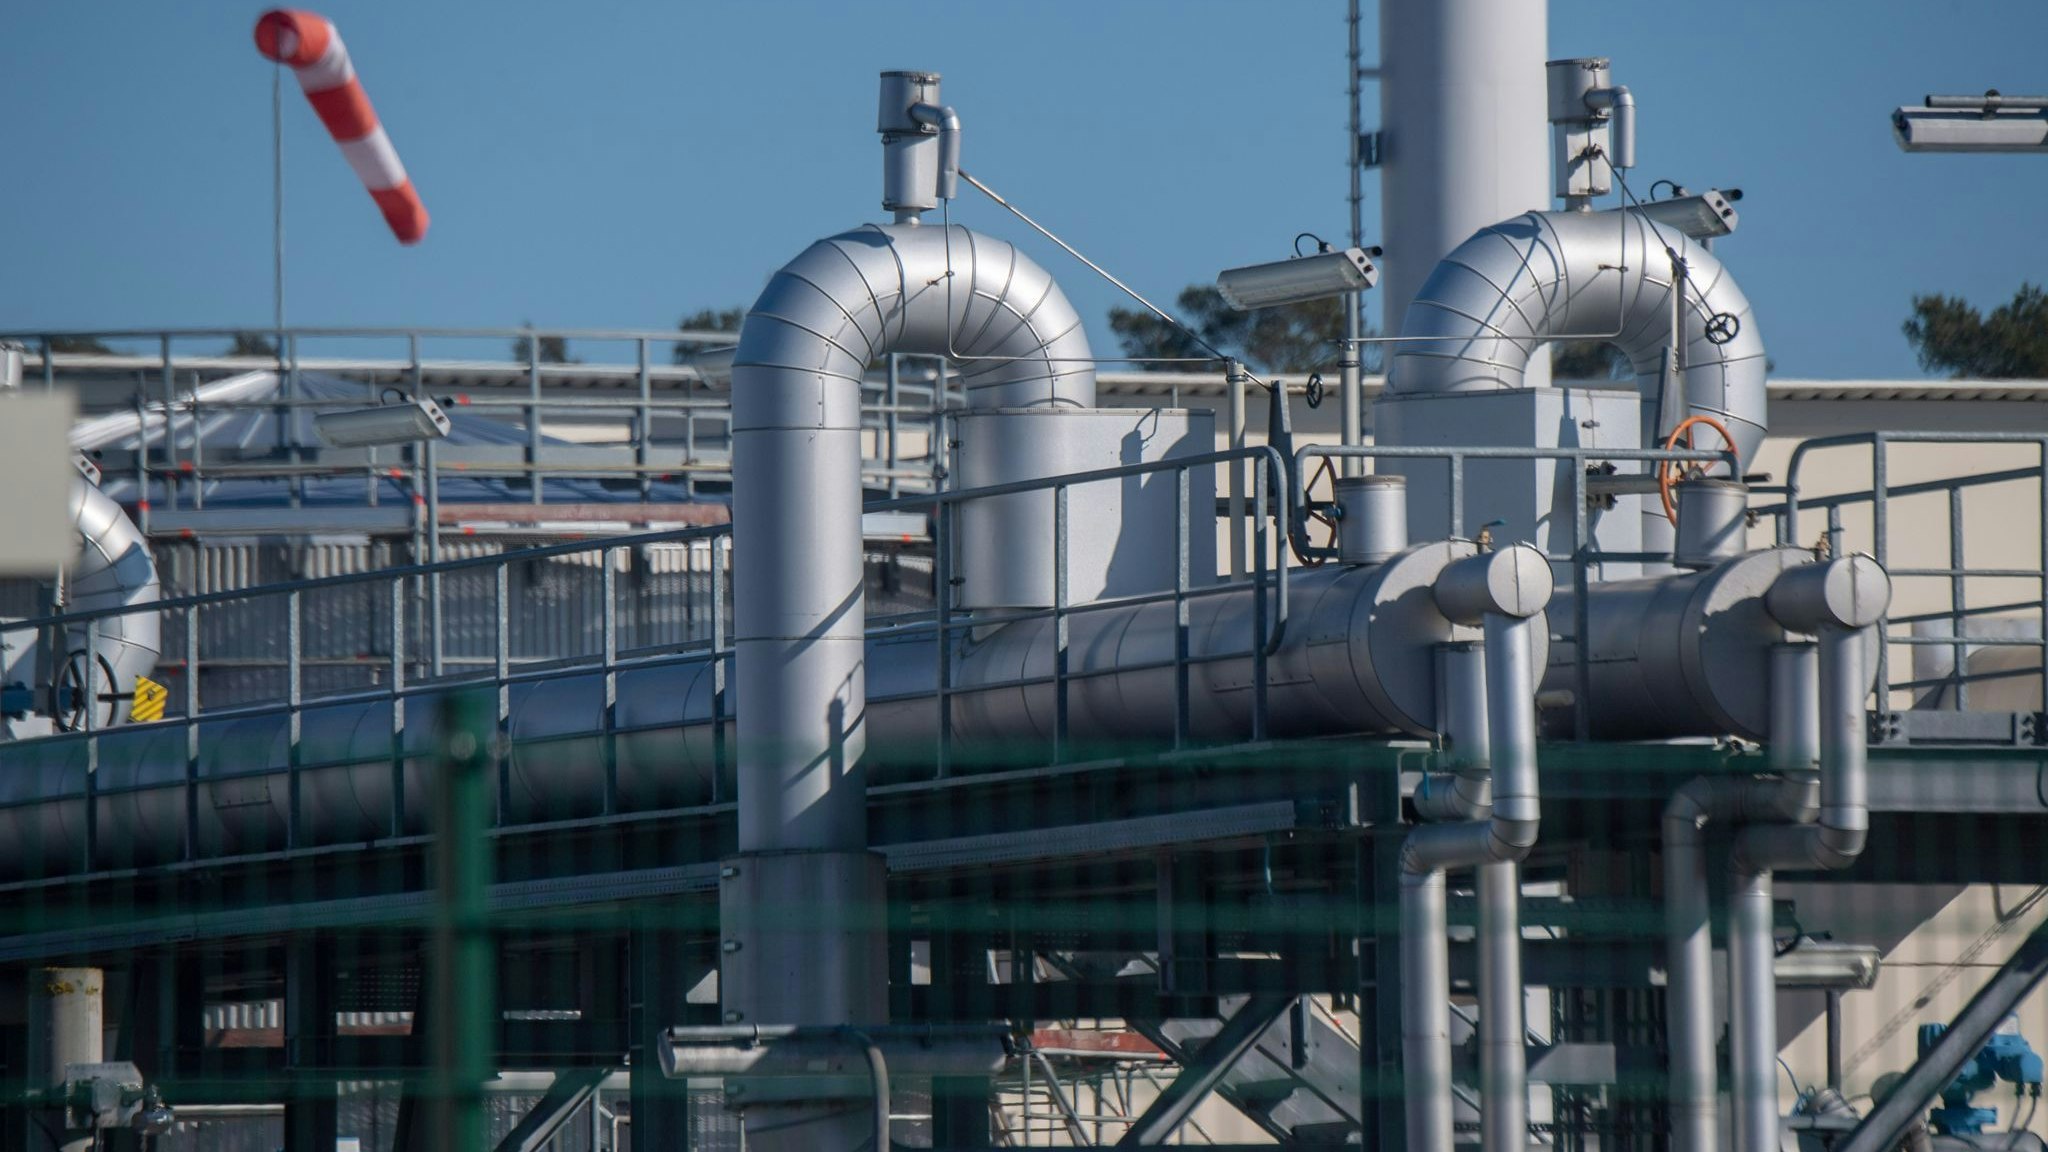 Rohrsysteme und Absperrvorrichtungen in der Gasempfangsstation der Ostseepipeline Nord Stream 1 in Lubmin. Foto: dpa/Sauer